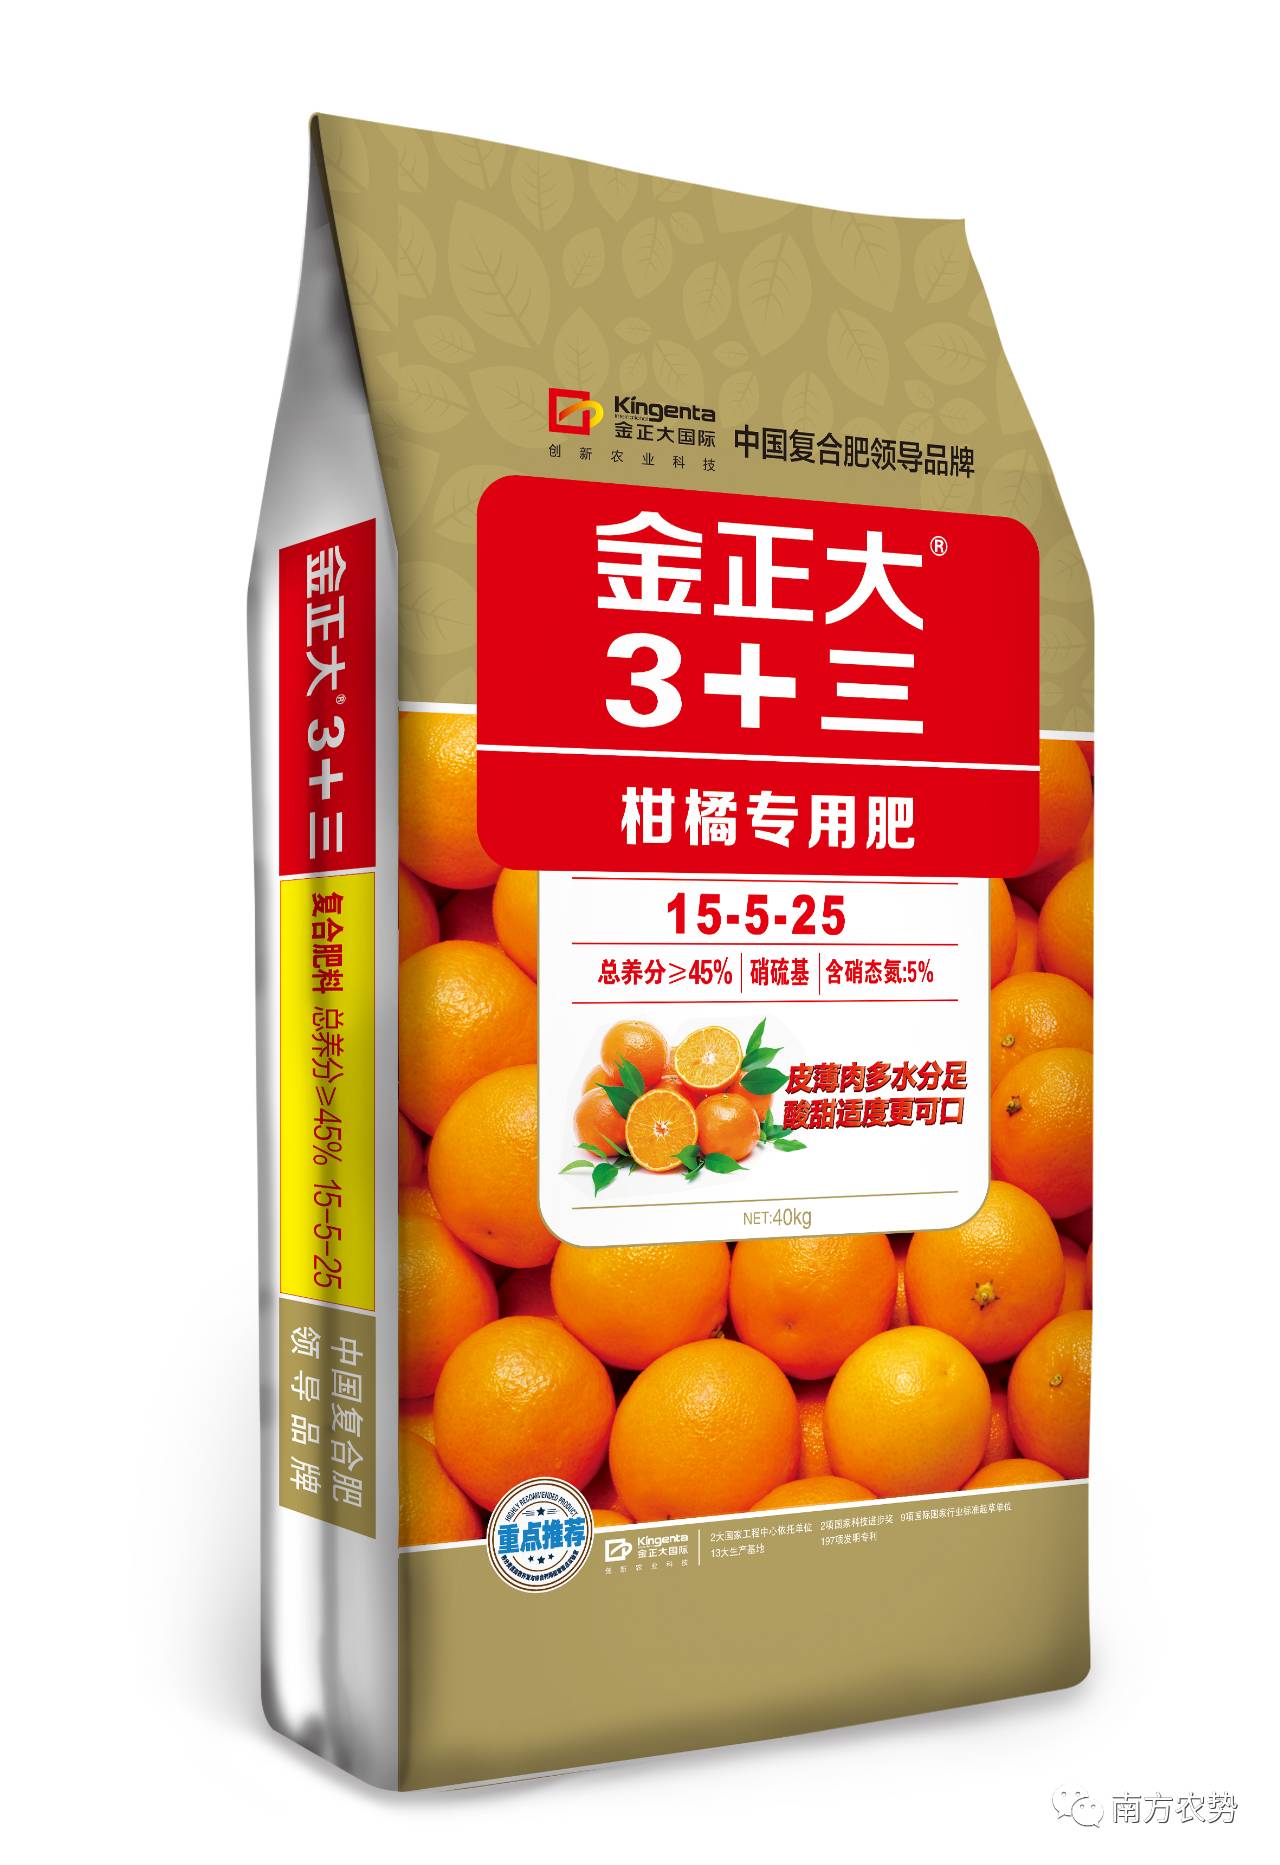 【新品速递】不容错过——金正大柑橘专用肥种专为柑橘而来!